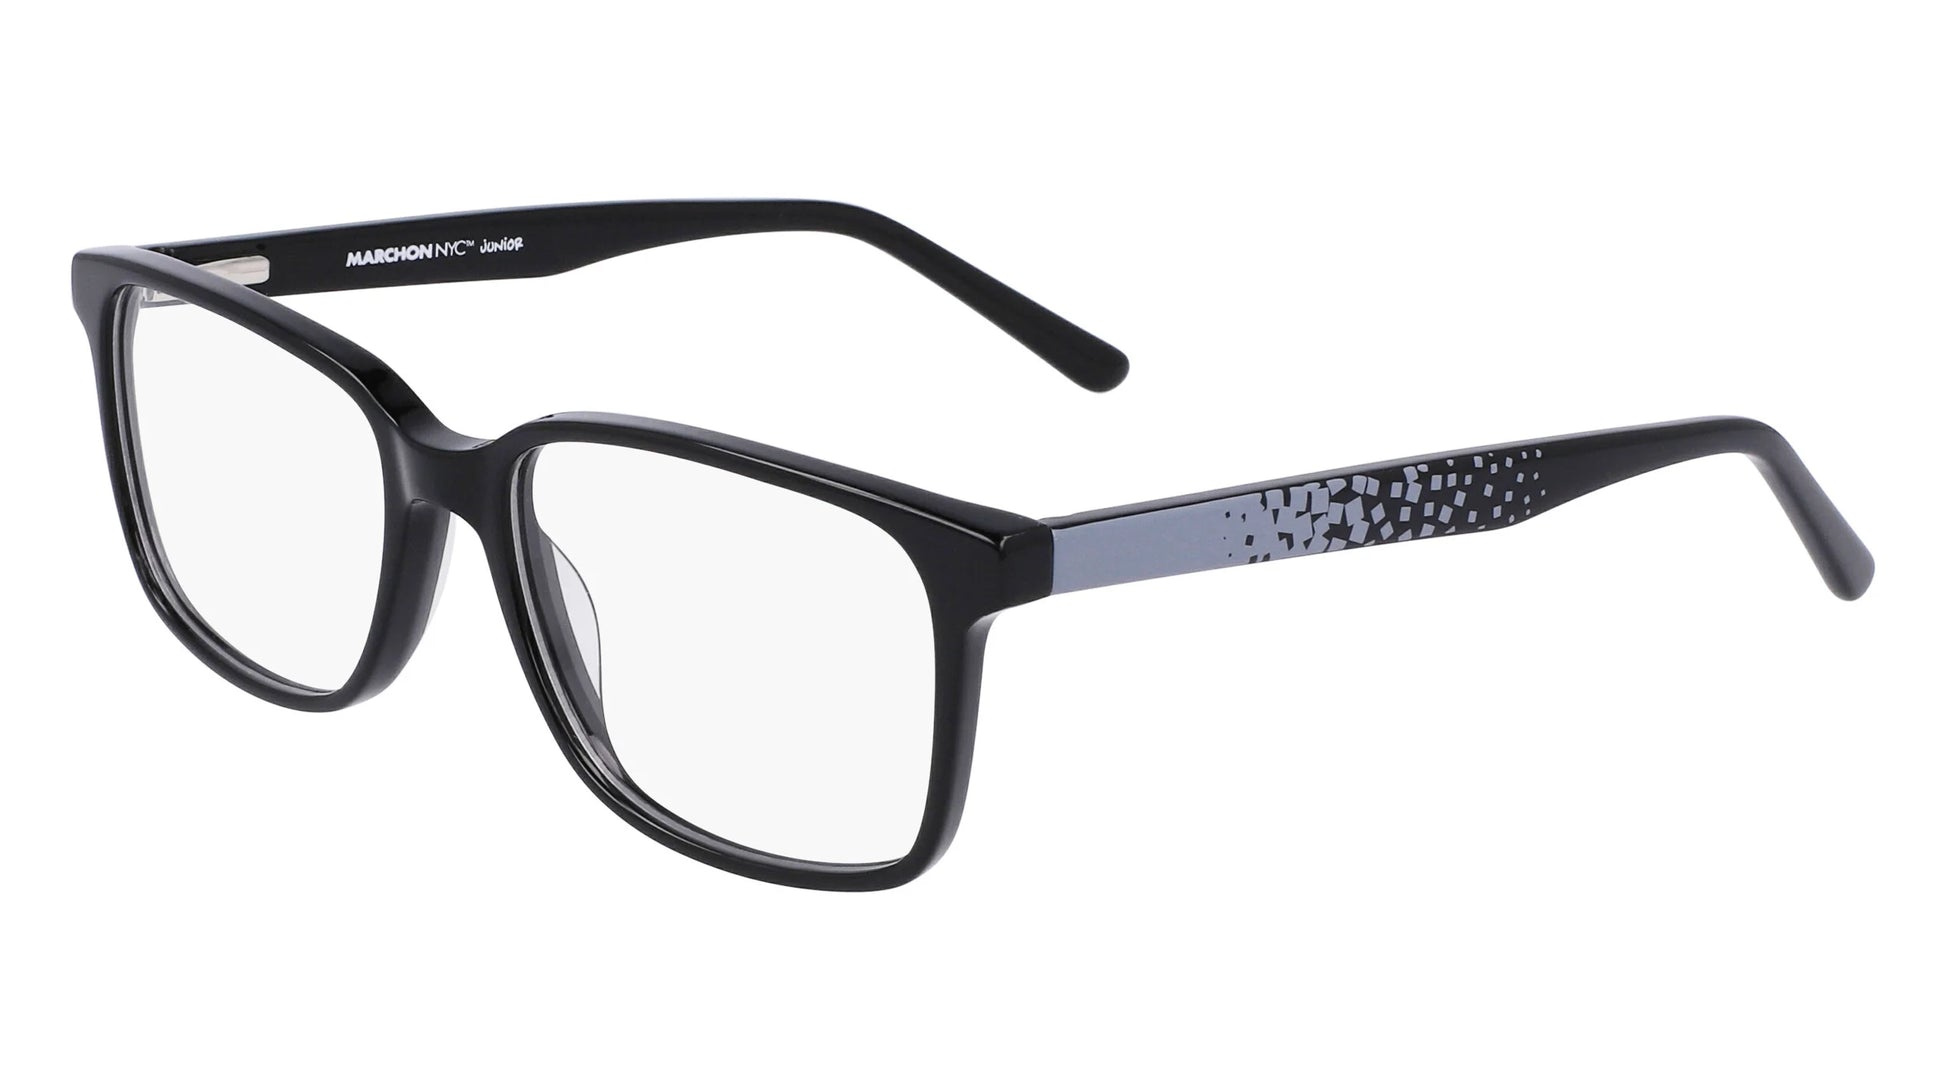 Marchon NYC M-6504 Eyeglasses Black